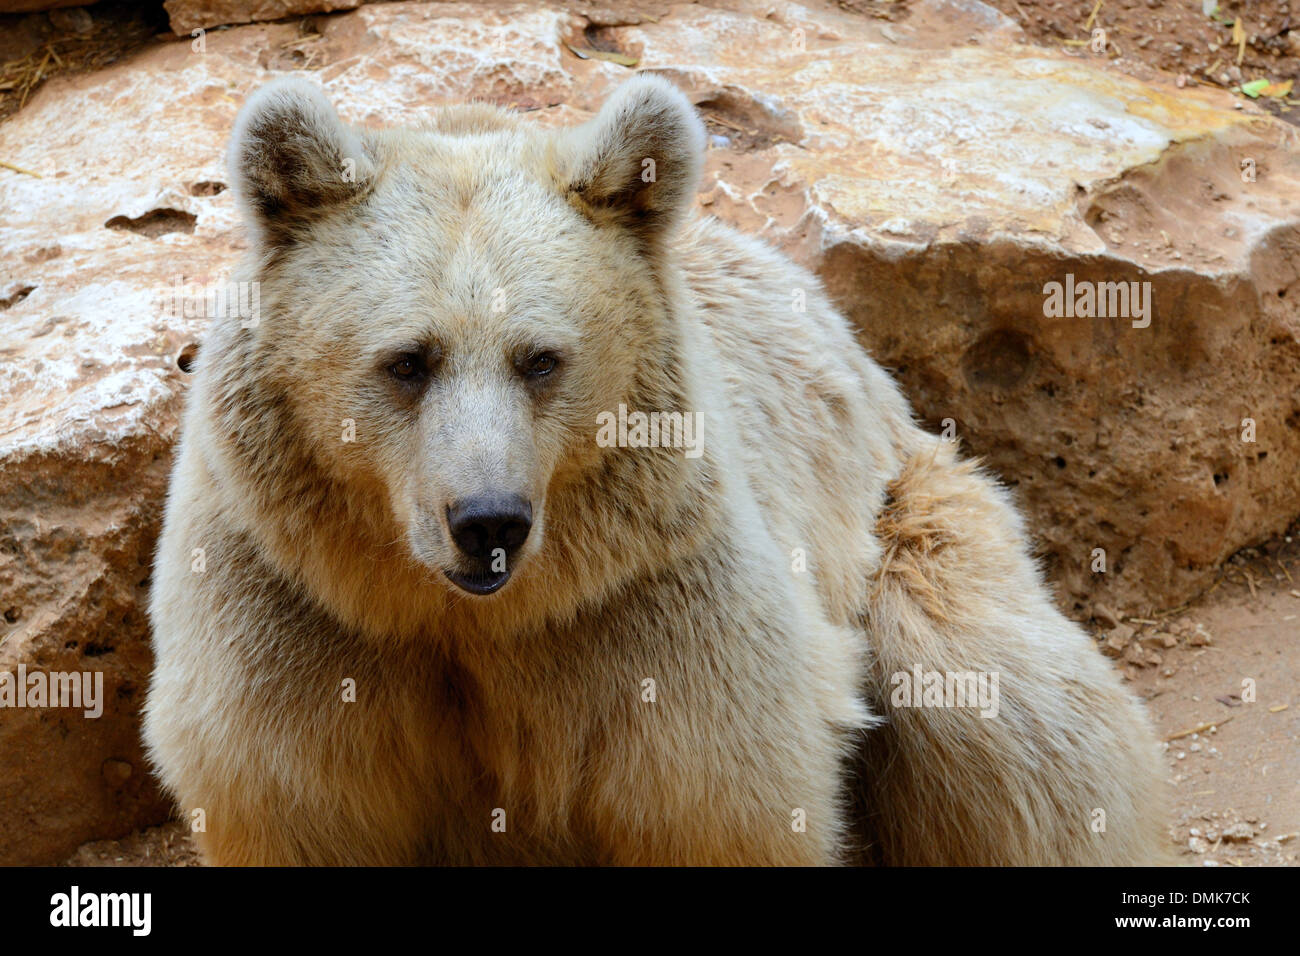 La République brown bear (Ursus arctos syriacus) est une sous-espèce relativement petite de l'ours brun originaire d'Eurasie. Banque D'Images